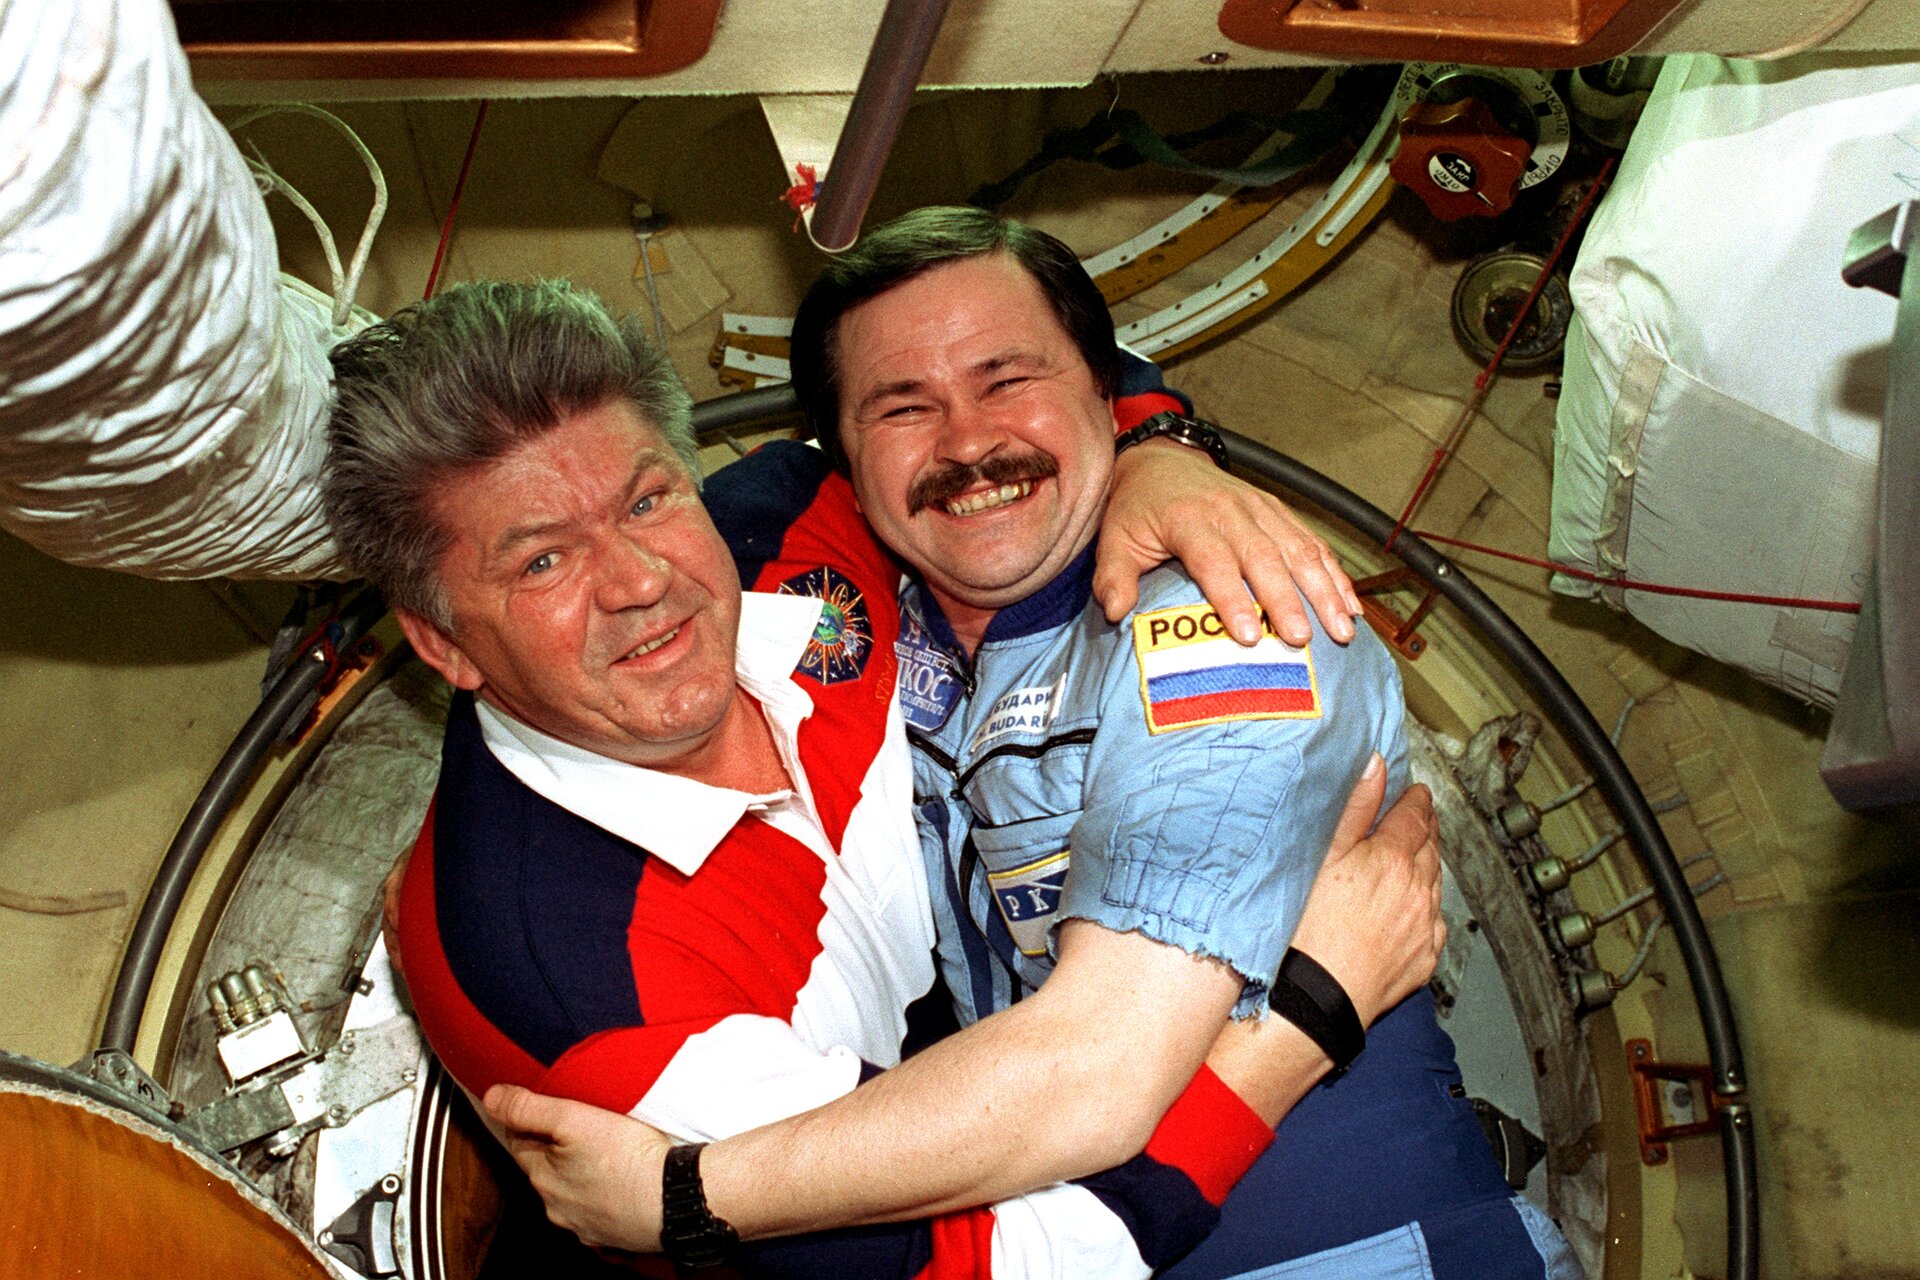 Zdjęcie przedstawia dwóch kosmonautów na stacji Mir. Mężczyźni w wieku ok. 50 lat. Obejmują się i pozują do zdjęcia. Mężczyzna po lewej ma siwiejące włosy, ogorzałą twarz oraz widoczne zmarszczki. Oczy jasne. Nos duży. Ubrany w koszulkę polo z długim rękawem w granatowo‑czerwono‑białe pasy z białym kołnierzykiem. Mężczyzna po prawej ma krótkie, ciemne włosy, starannie zaczesane z przedziałkiem po prawej stronie (jego lewej). Mężczyzna szeroko się uśmiecha pokazując zęby. Oczy zmrużone. Mężczyzna ma ciemne wąsy. Ubrany jest w niebieski kombinezon z naszytą na lewym ramieniu flagą Rosji. Obaj mężczyźni noszą czarne zegarki.